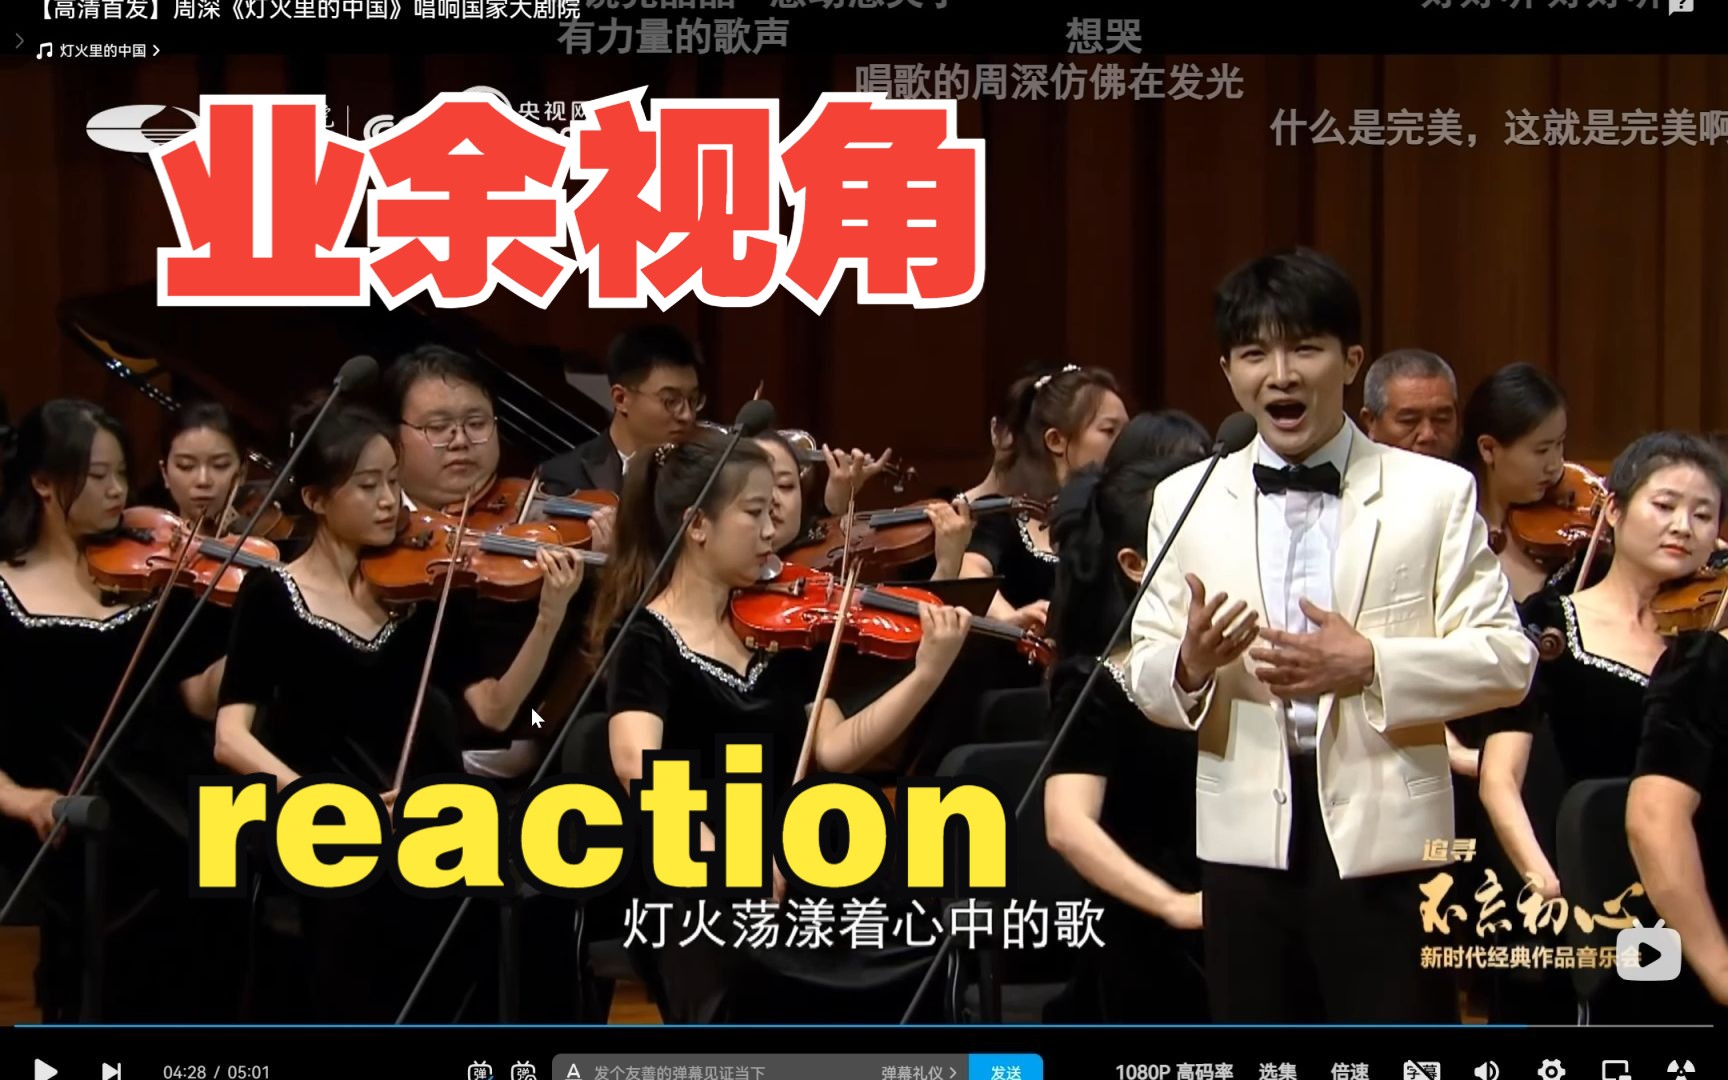 【Reaction】当业余圆号手看到国家大剧院版本的《灯火里的中国》，聊聊自己的感受